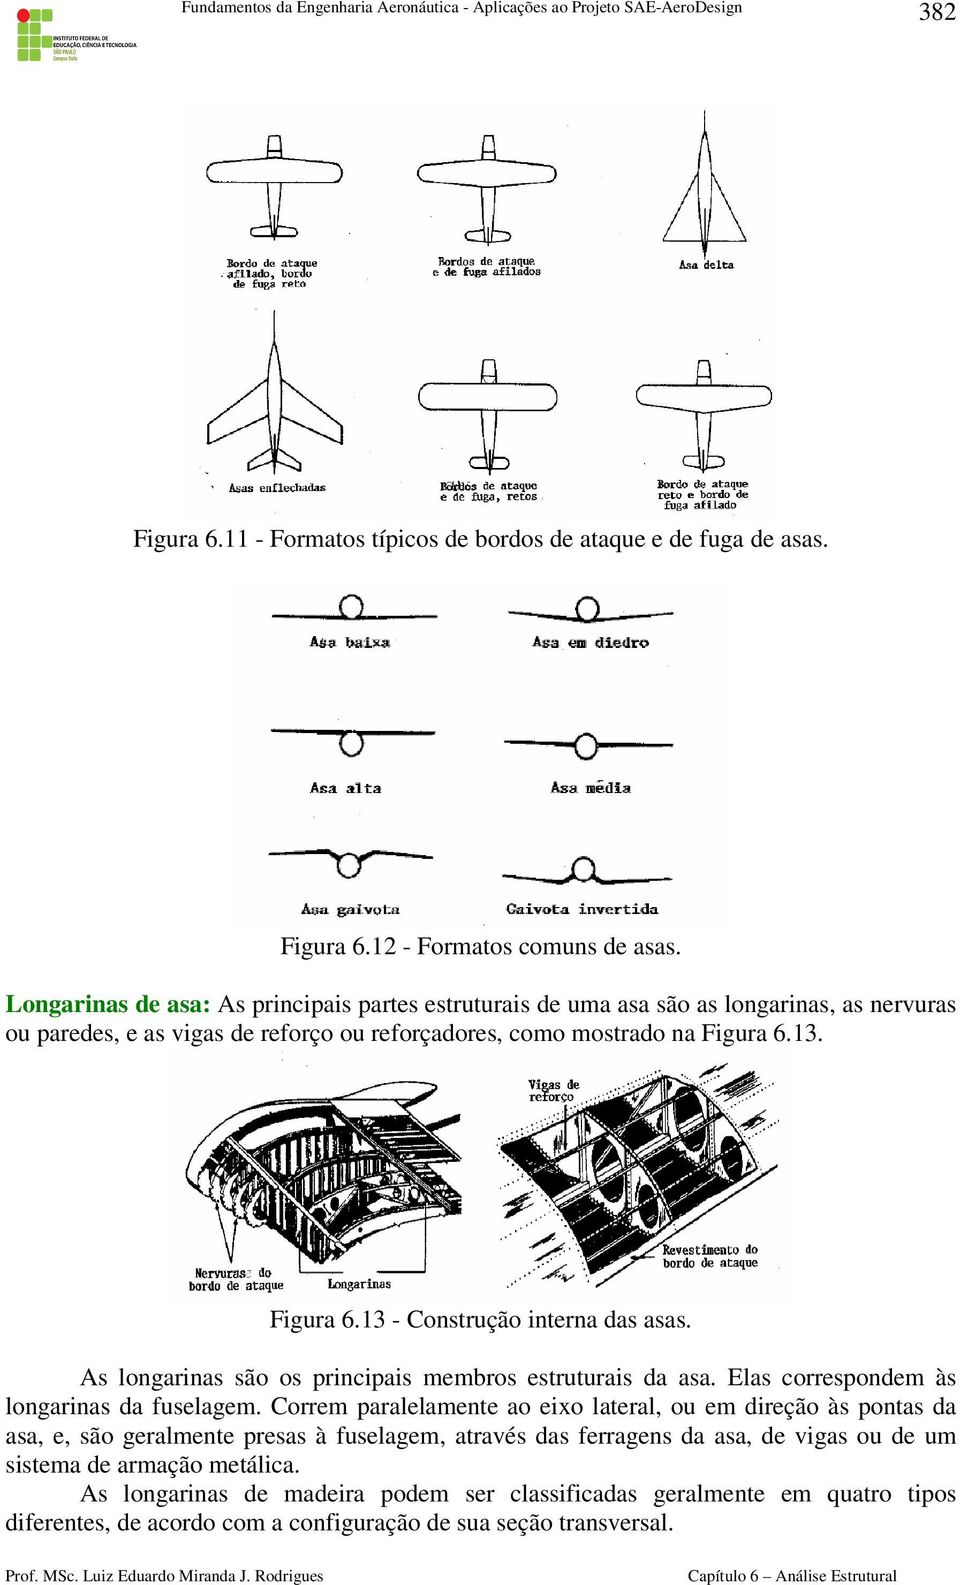 13. Figura 6.13 - Construção interna das asas. As longarinas são os principais membros estruturais da asa. Elas correspondem às longarinas da fuselagem.